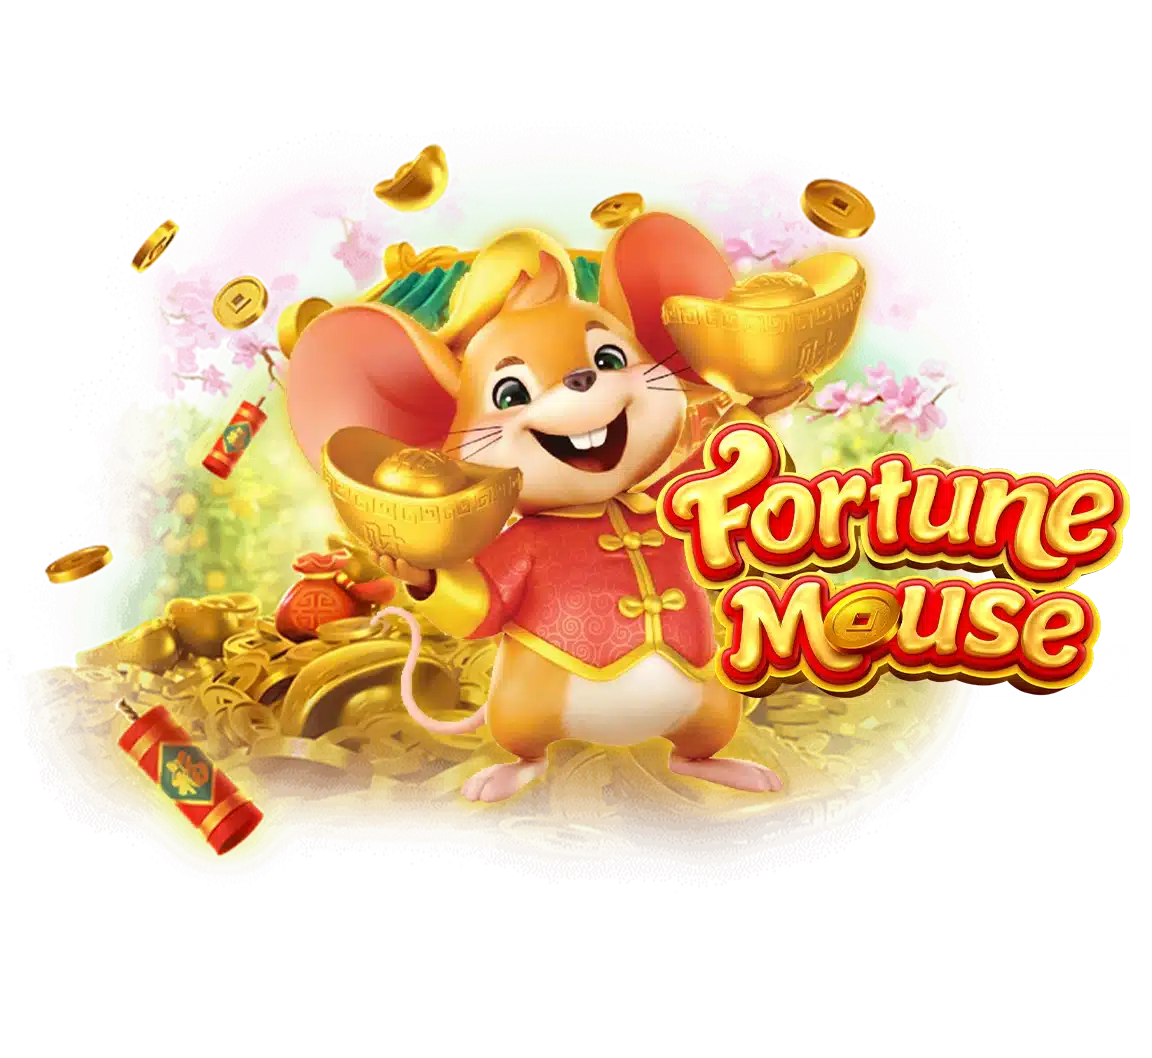 Fortune mouse รีวิว หนูทองนำโชค ค่ายเกม PG Slot ทดลองเล่นฟรี | FAZX789